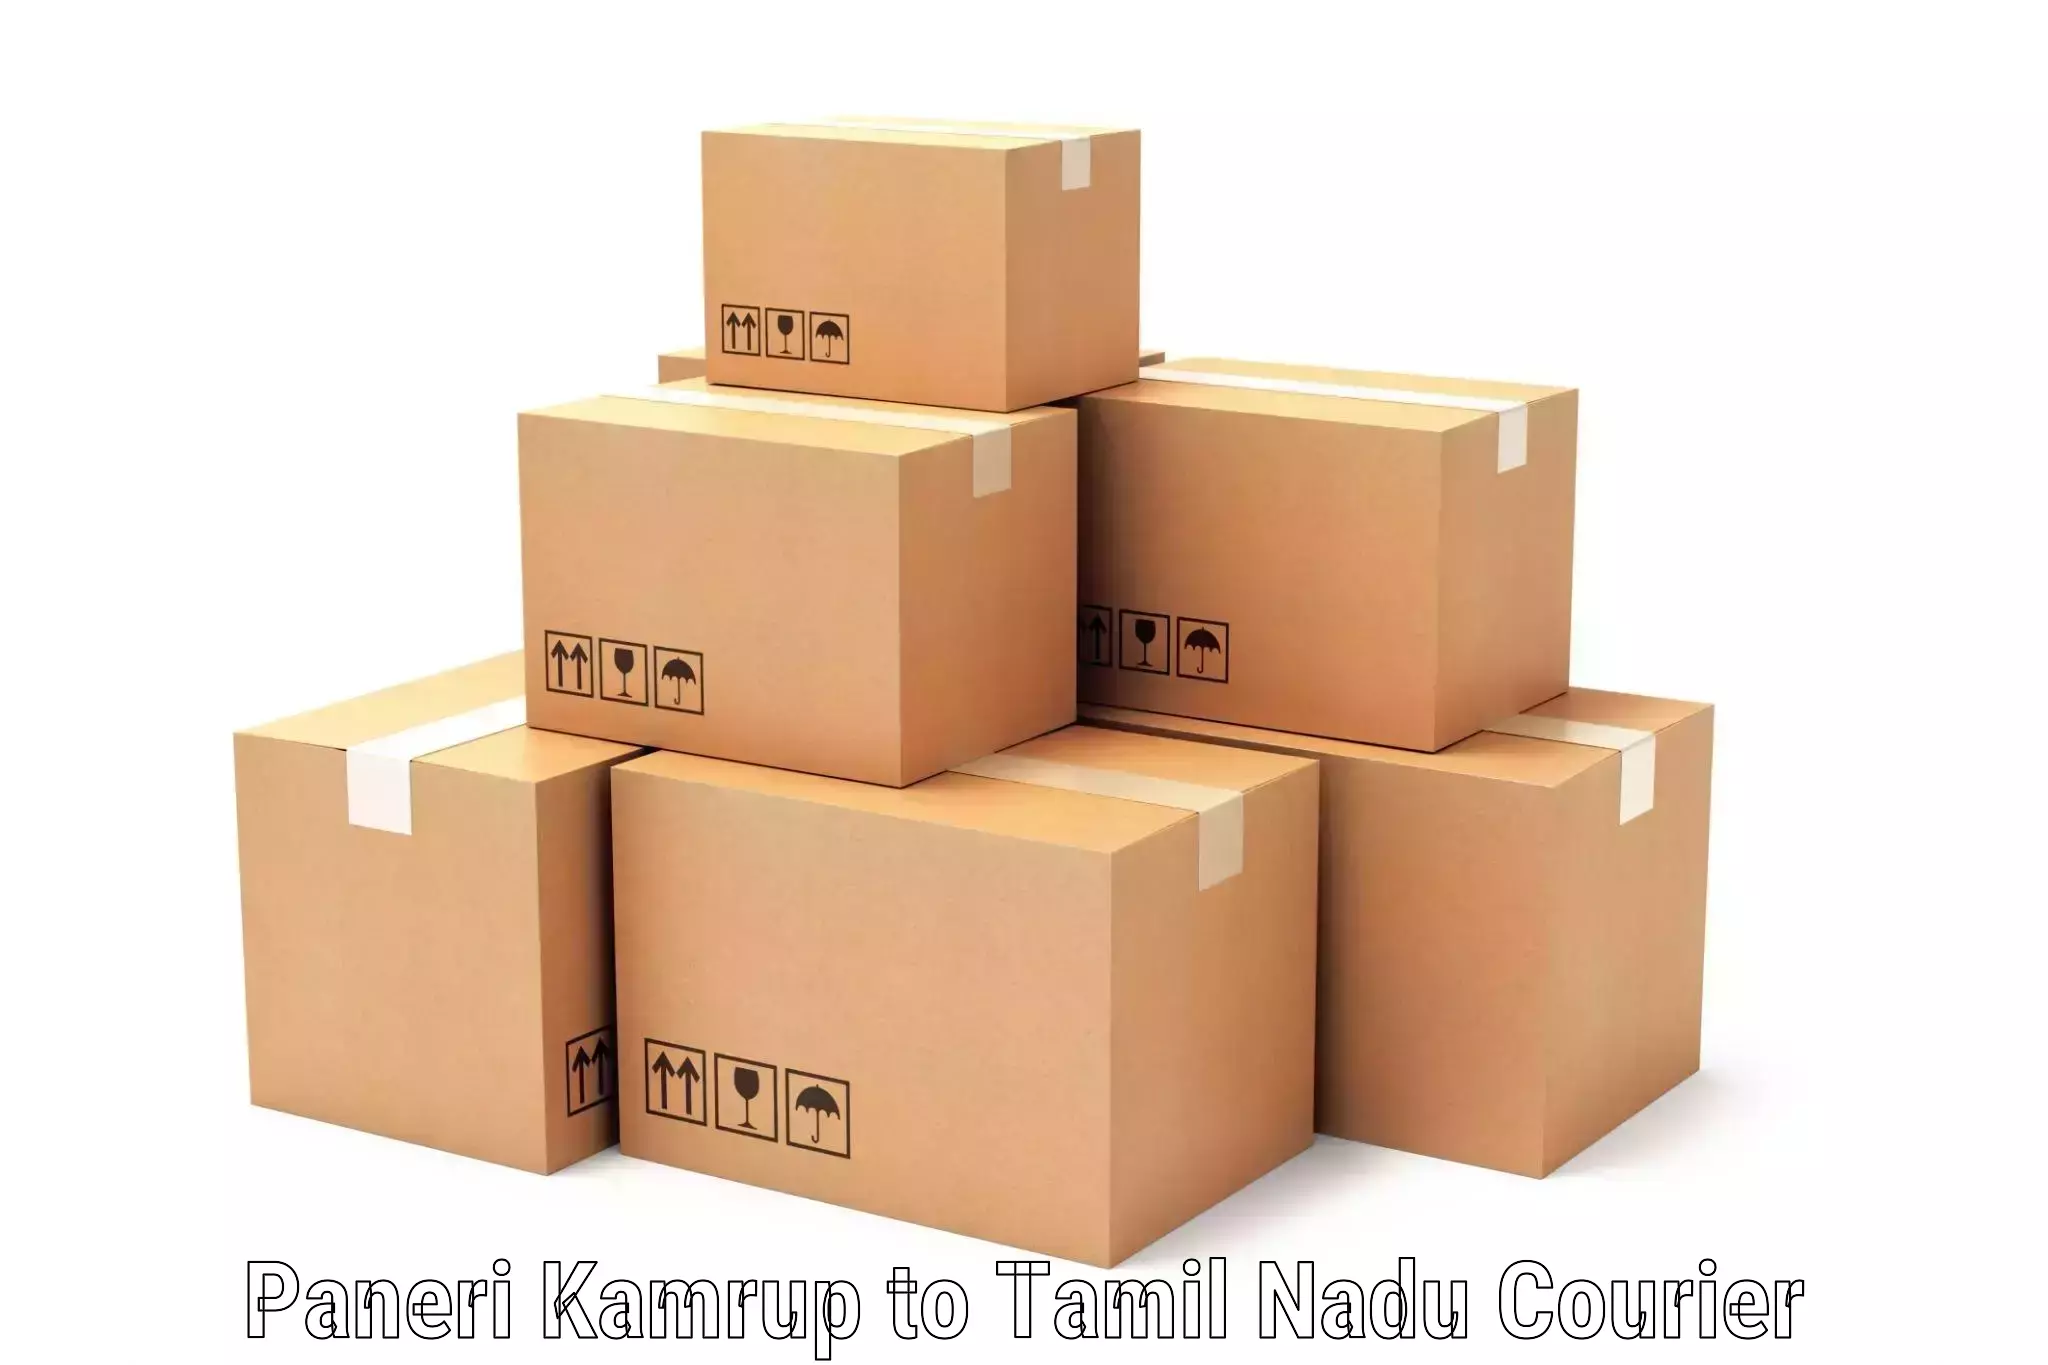 High-speed parcel service Paneri Kamrup to Ambasamudram